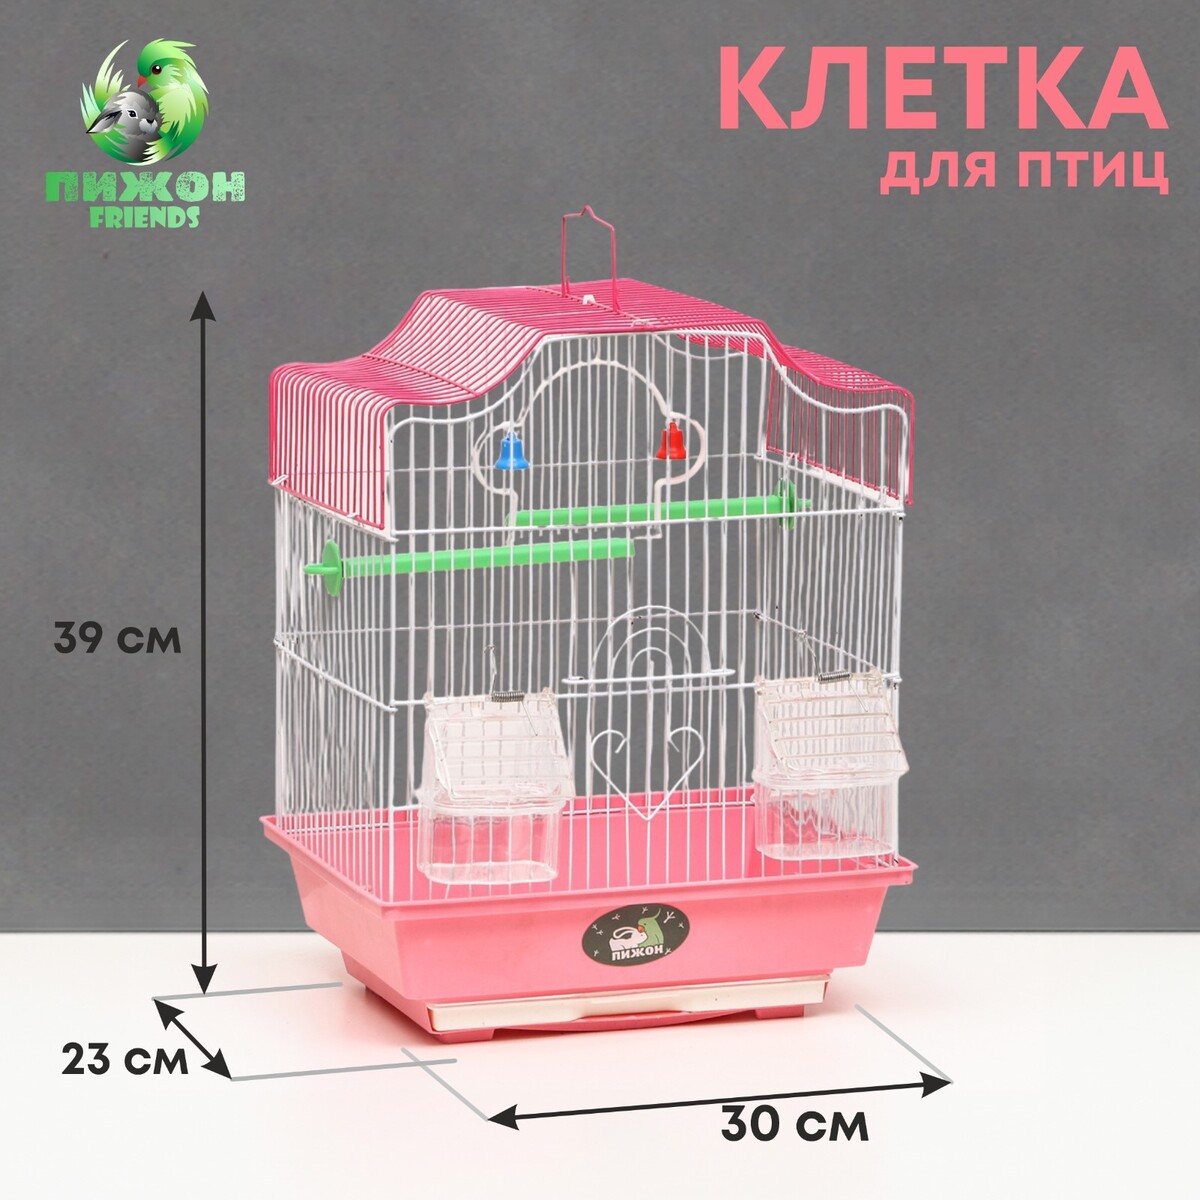 Клетка для птиц укомплектованная bd-1/4f, 30 х 23 х 39 см, розовая клетка для птиц овальная с кормушками 30 х 23 х 39 см розовая